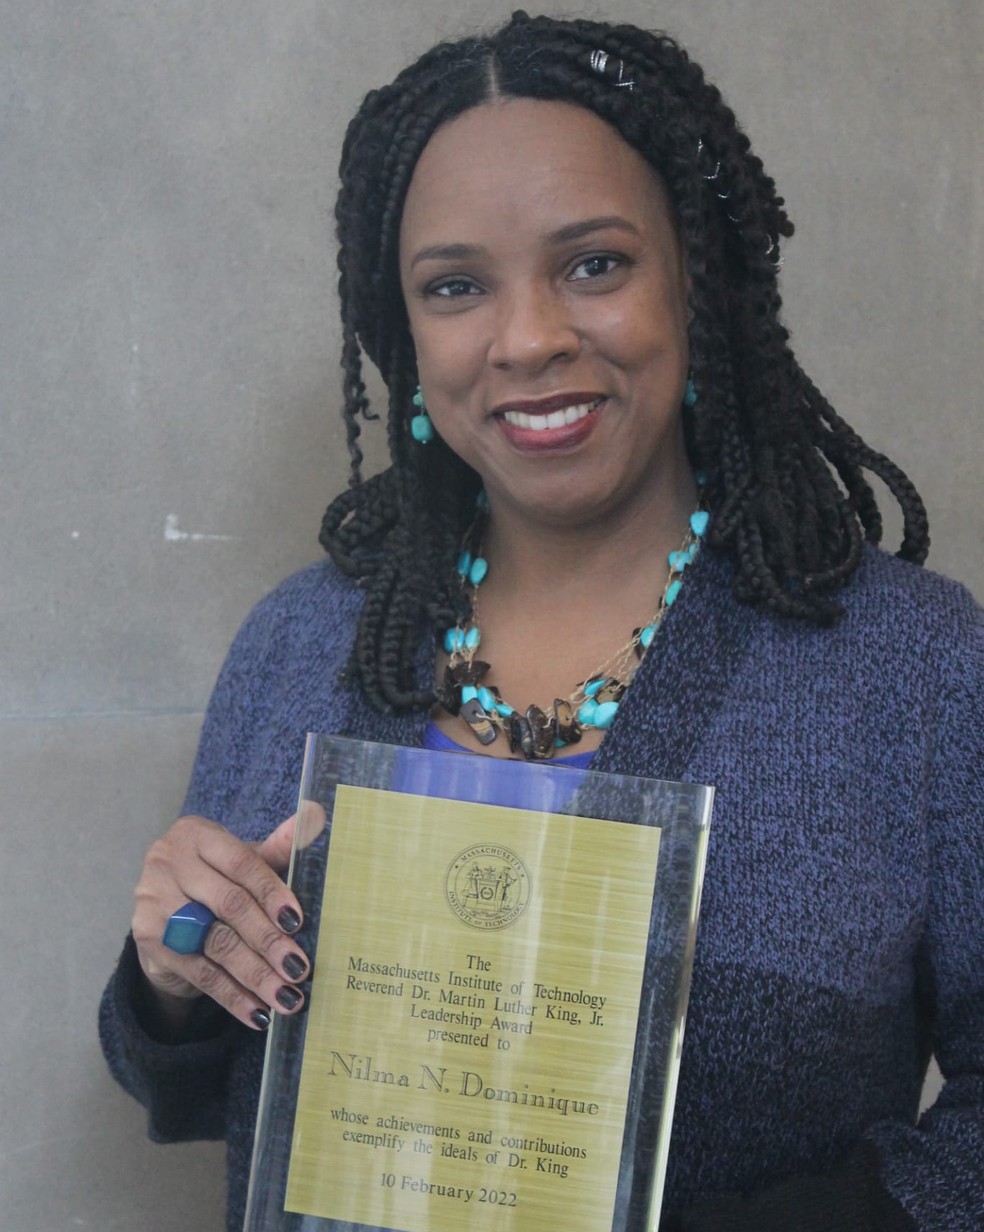 Professora Nilma Dominique recebeu o prêmio Martin Luther King — Foto: Arquivo pessoal